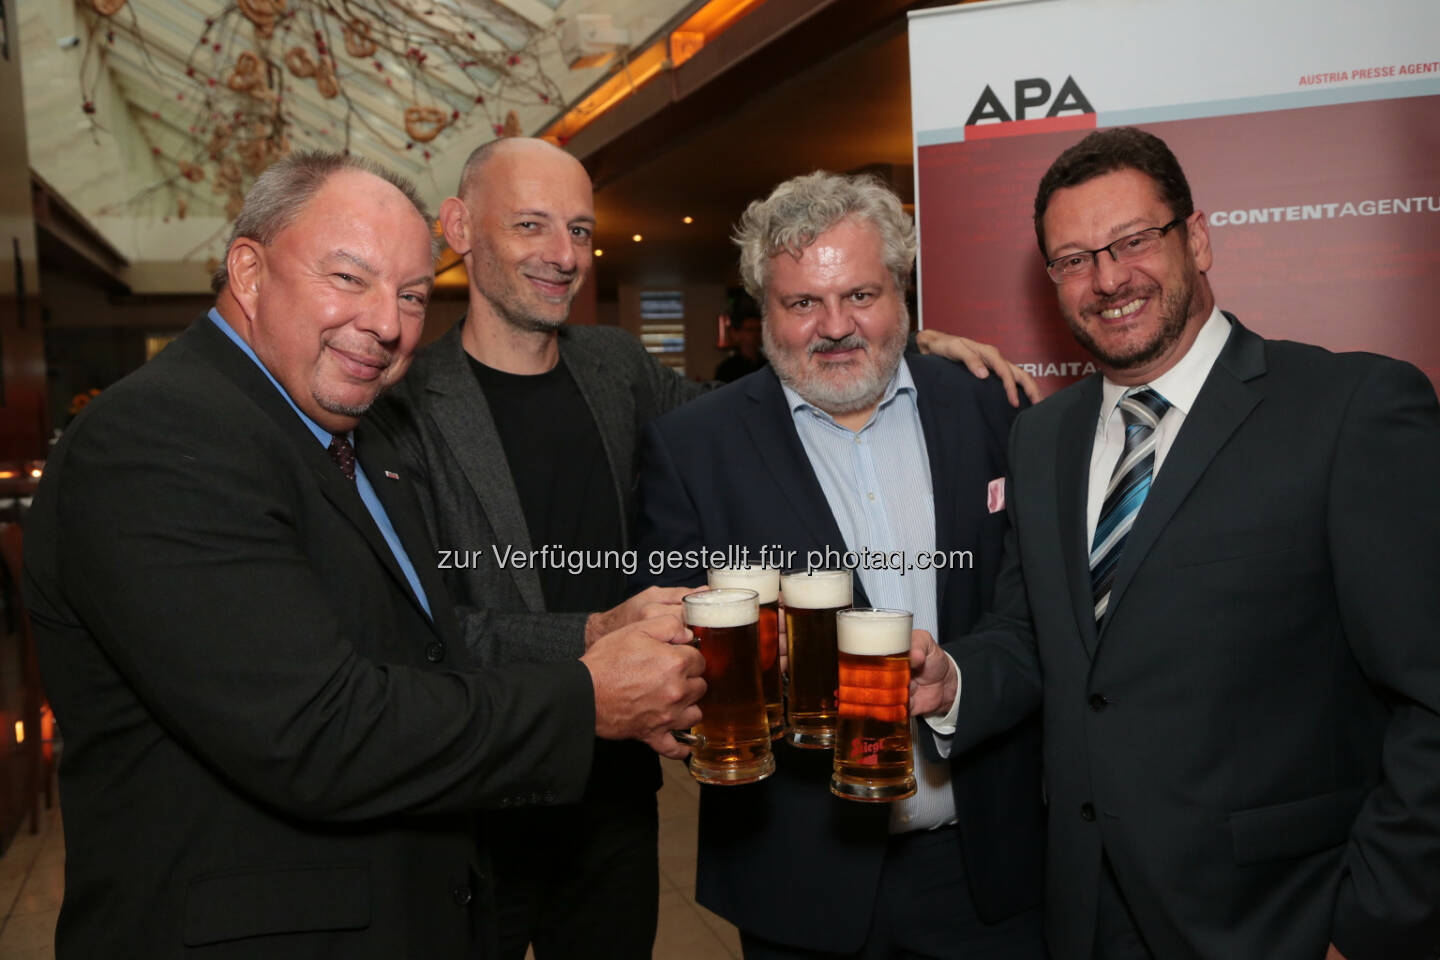 Werner Müllner, Marcus Hebein, Johannes Bruckenberger und Michael Lang (APA-Chefredaktion) - Beim Bierigen im Alten AKH begrüßte die APA mehr als 400 Gäste aus Medien und Kommunikation (Bild: APA-Fotoservice/Schedl)